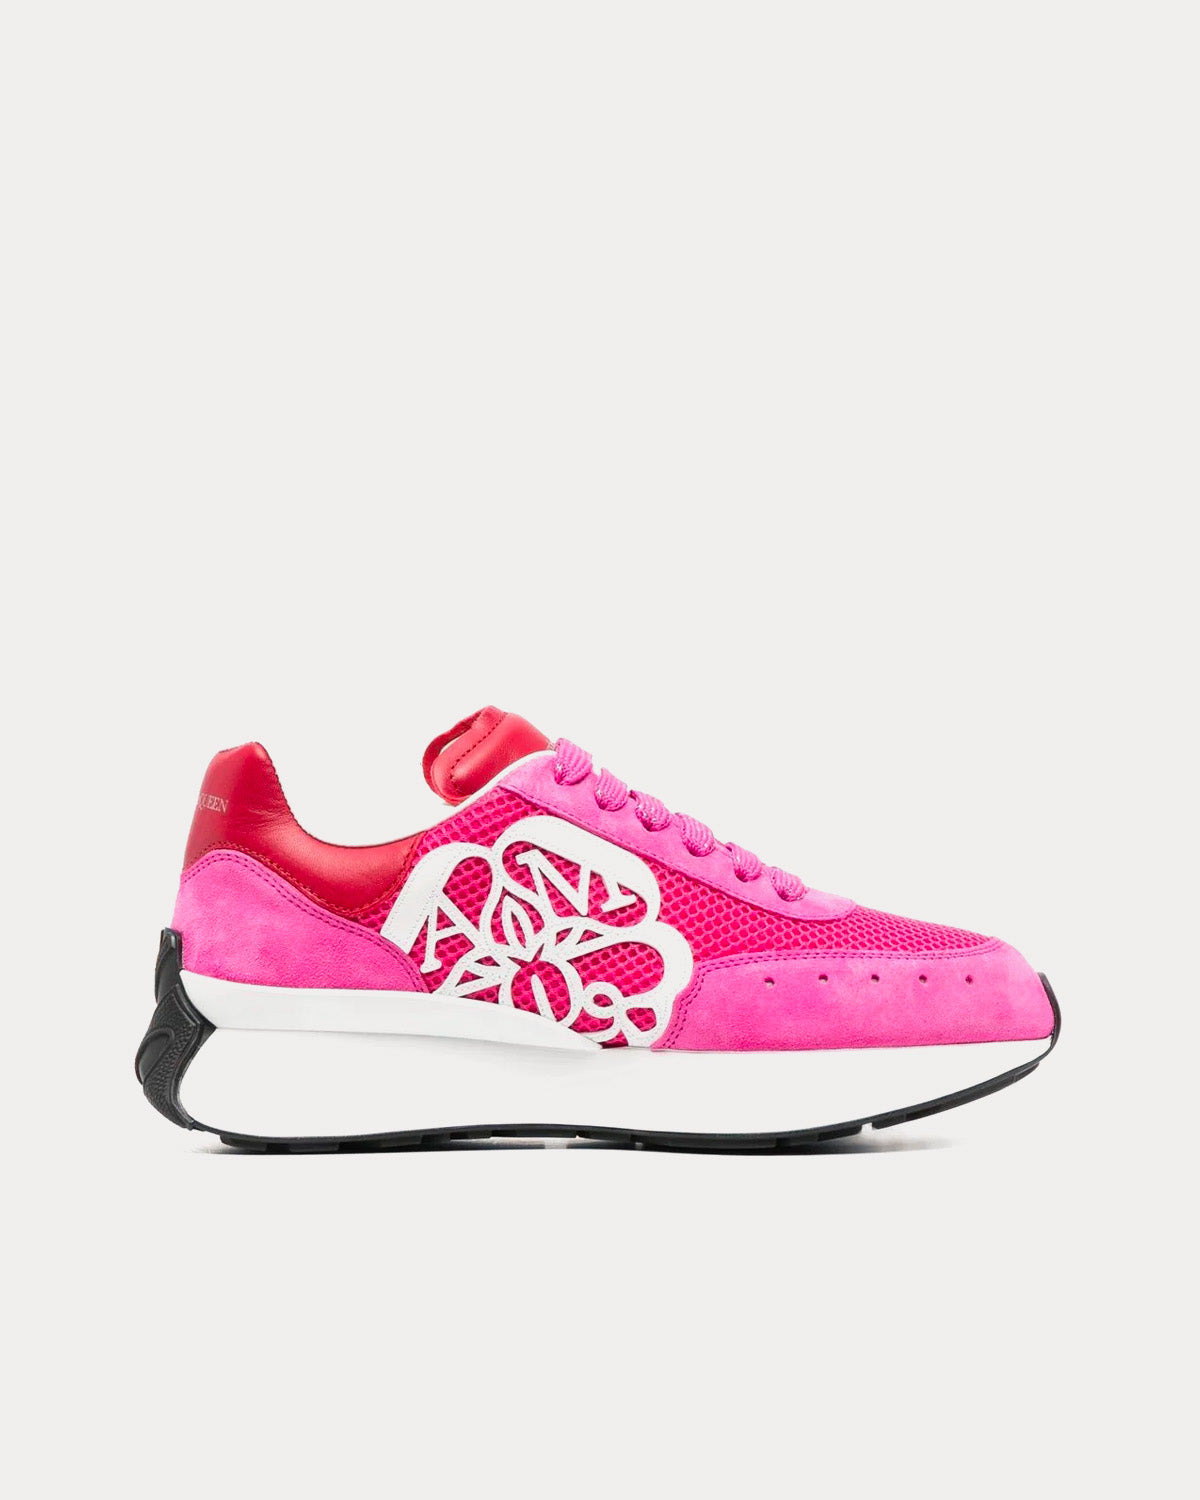 Alexander McQueen - Sprint Runner Pink / White Low Top Sneakers